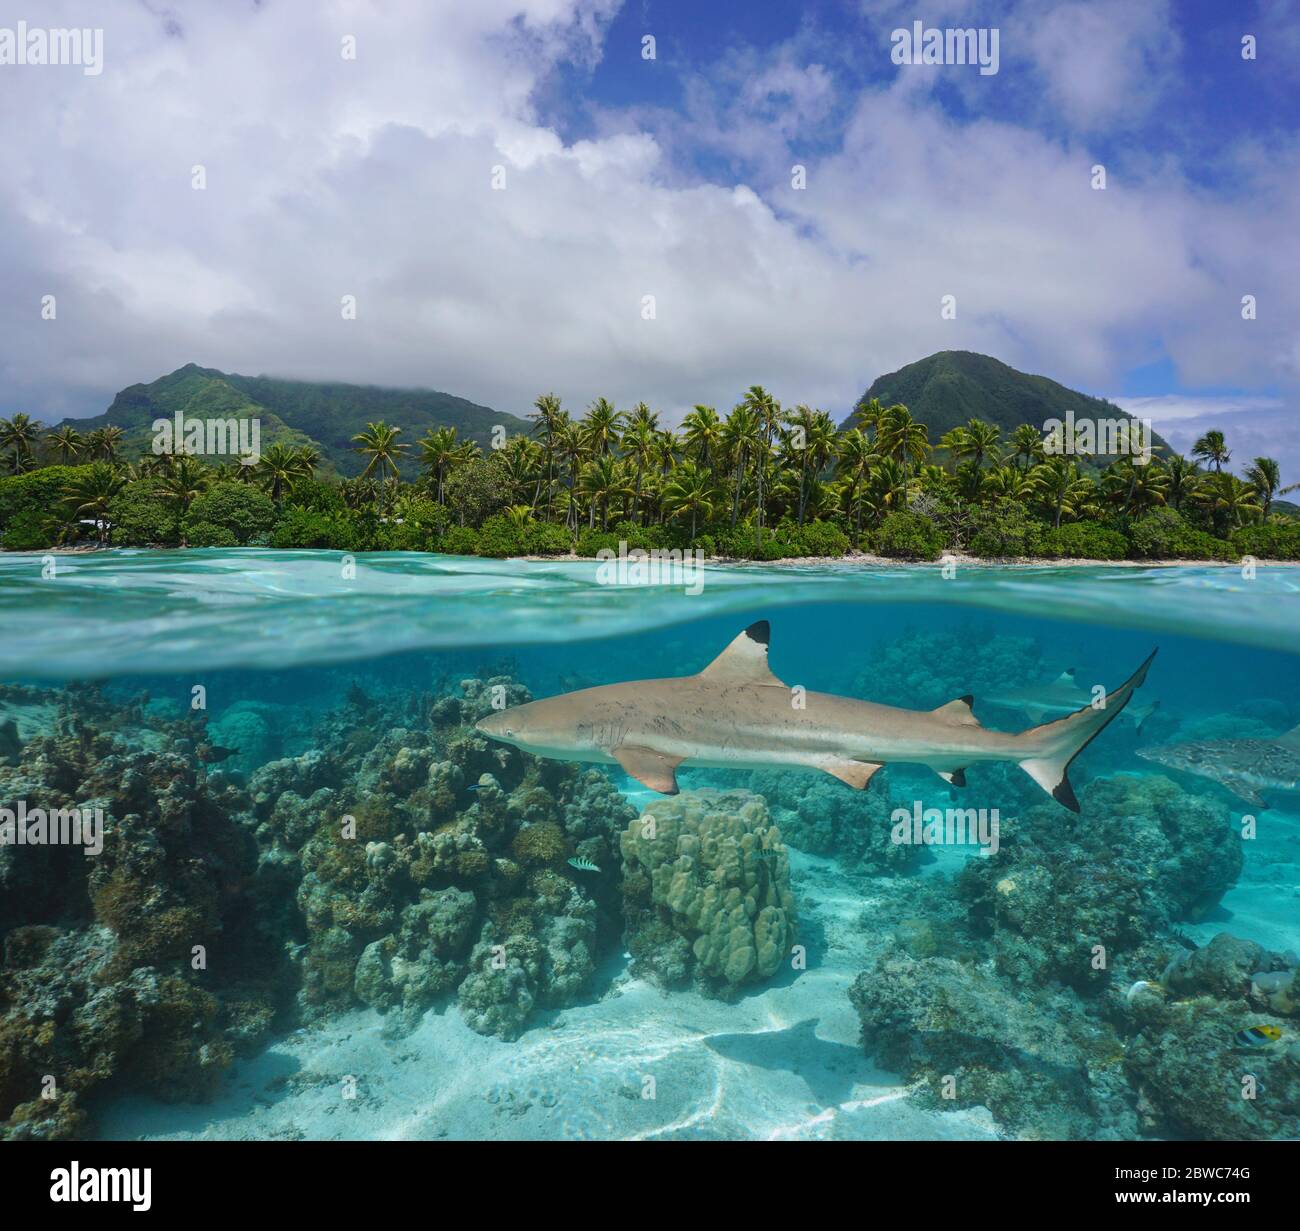 Tropische Seenlandschaft, Küste mit Schwarzspitzenriffhai unter Wasser, geteilte Sicht unter Wasser, Französisch Polynesien, Huahine Insel, Pazifischer Ozean Stockfoto